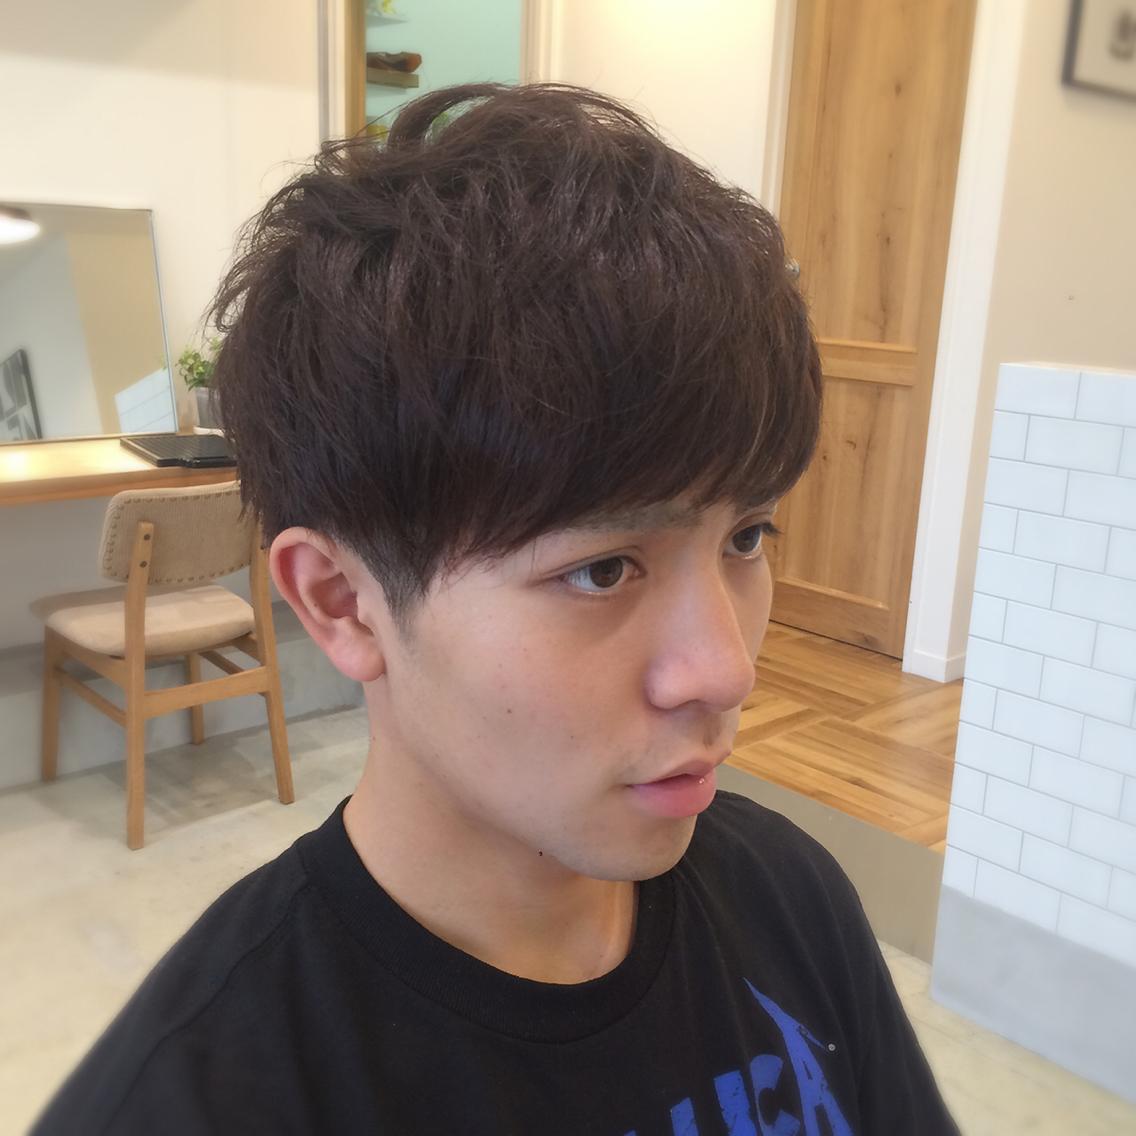 メンズ韓国男性の髪型人気おしゃれランキングtop16ヘアアレンジ法